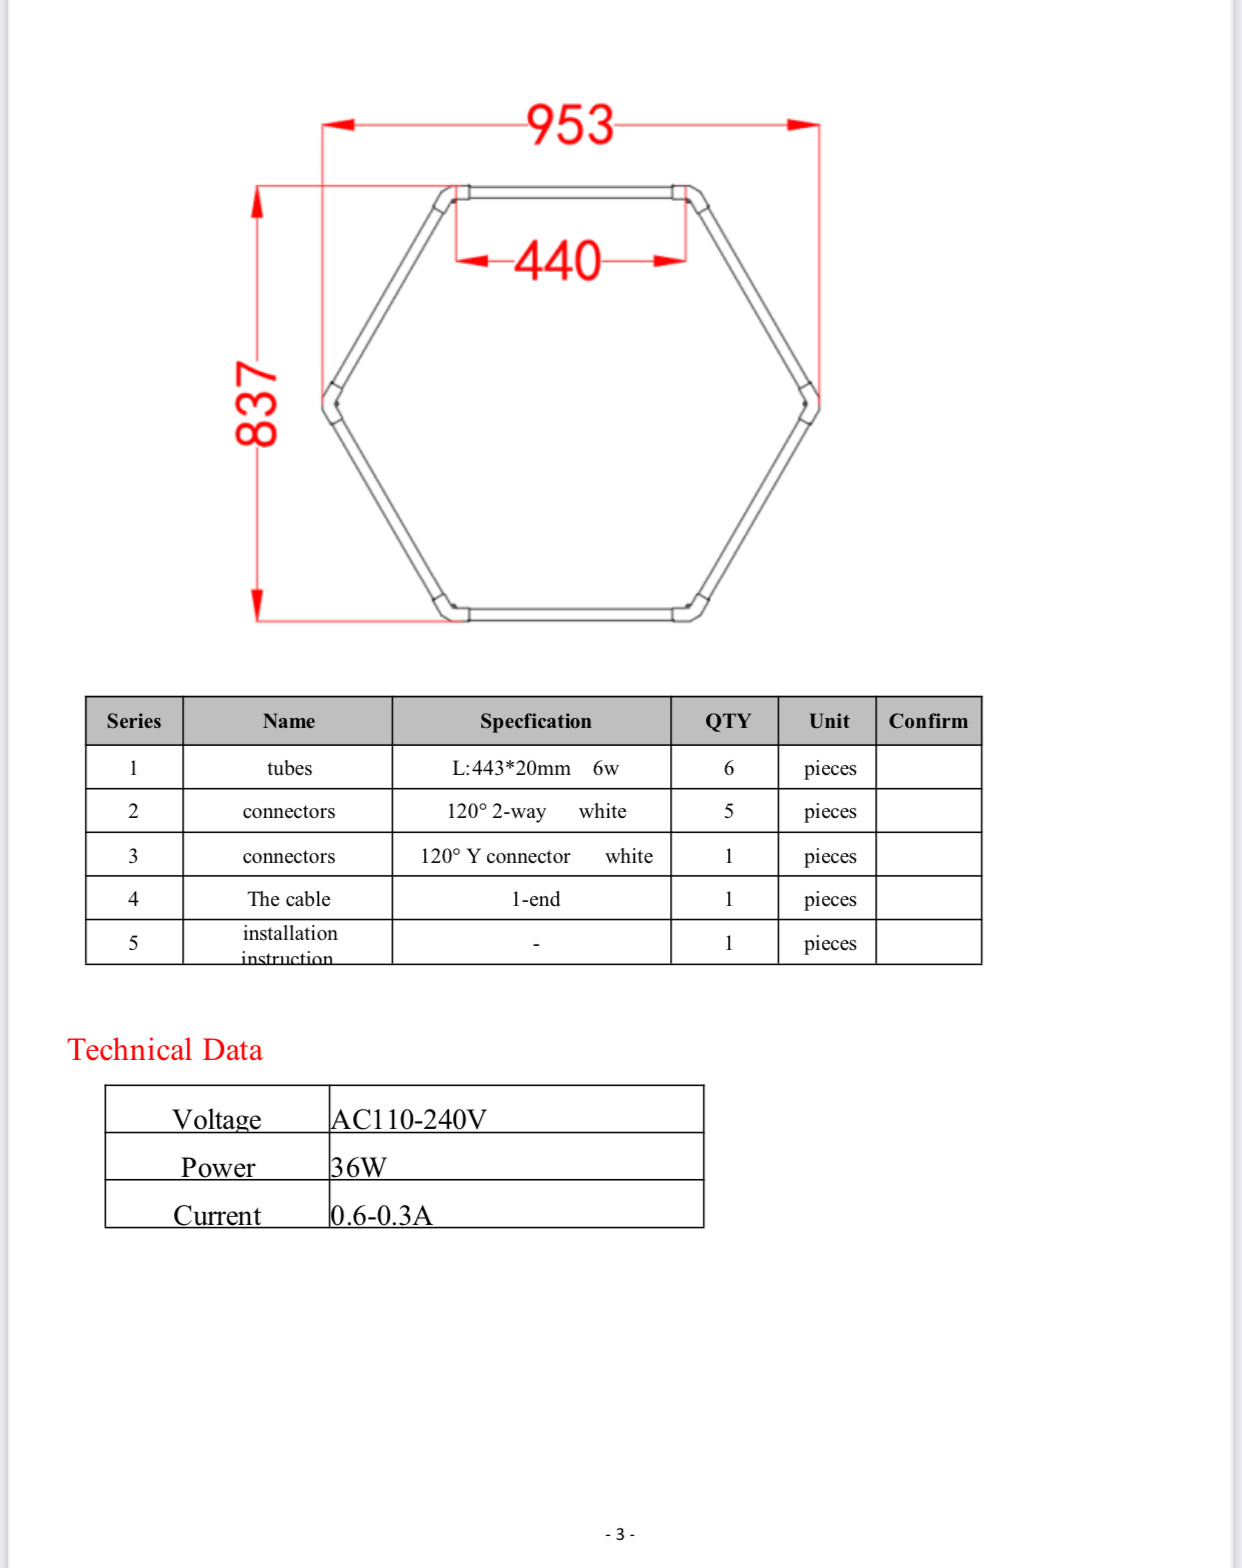 1 Hexagon 965 mm X 830 mm (vareprøver komplett Hexagon sekskant)